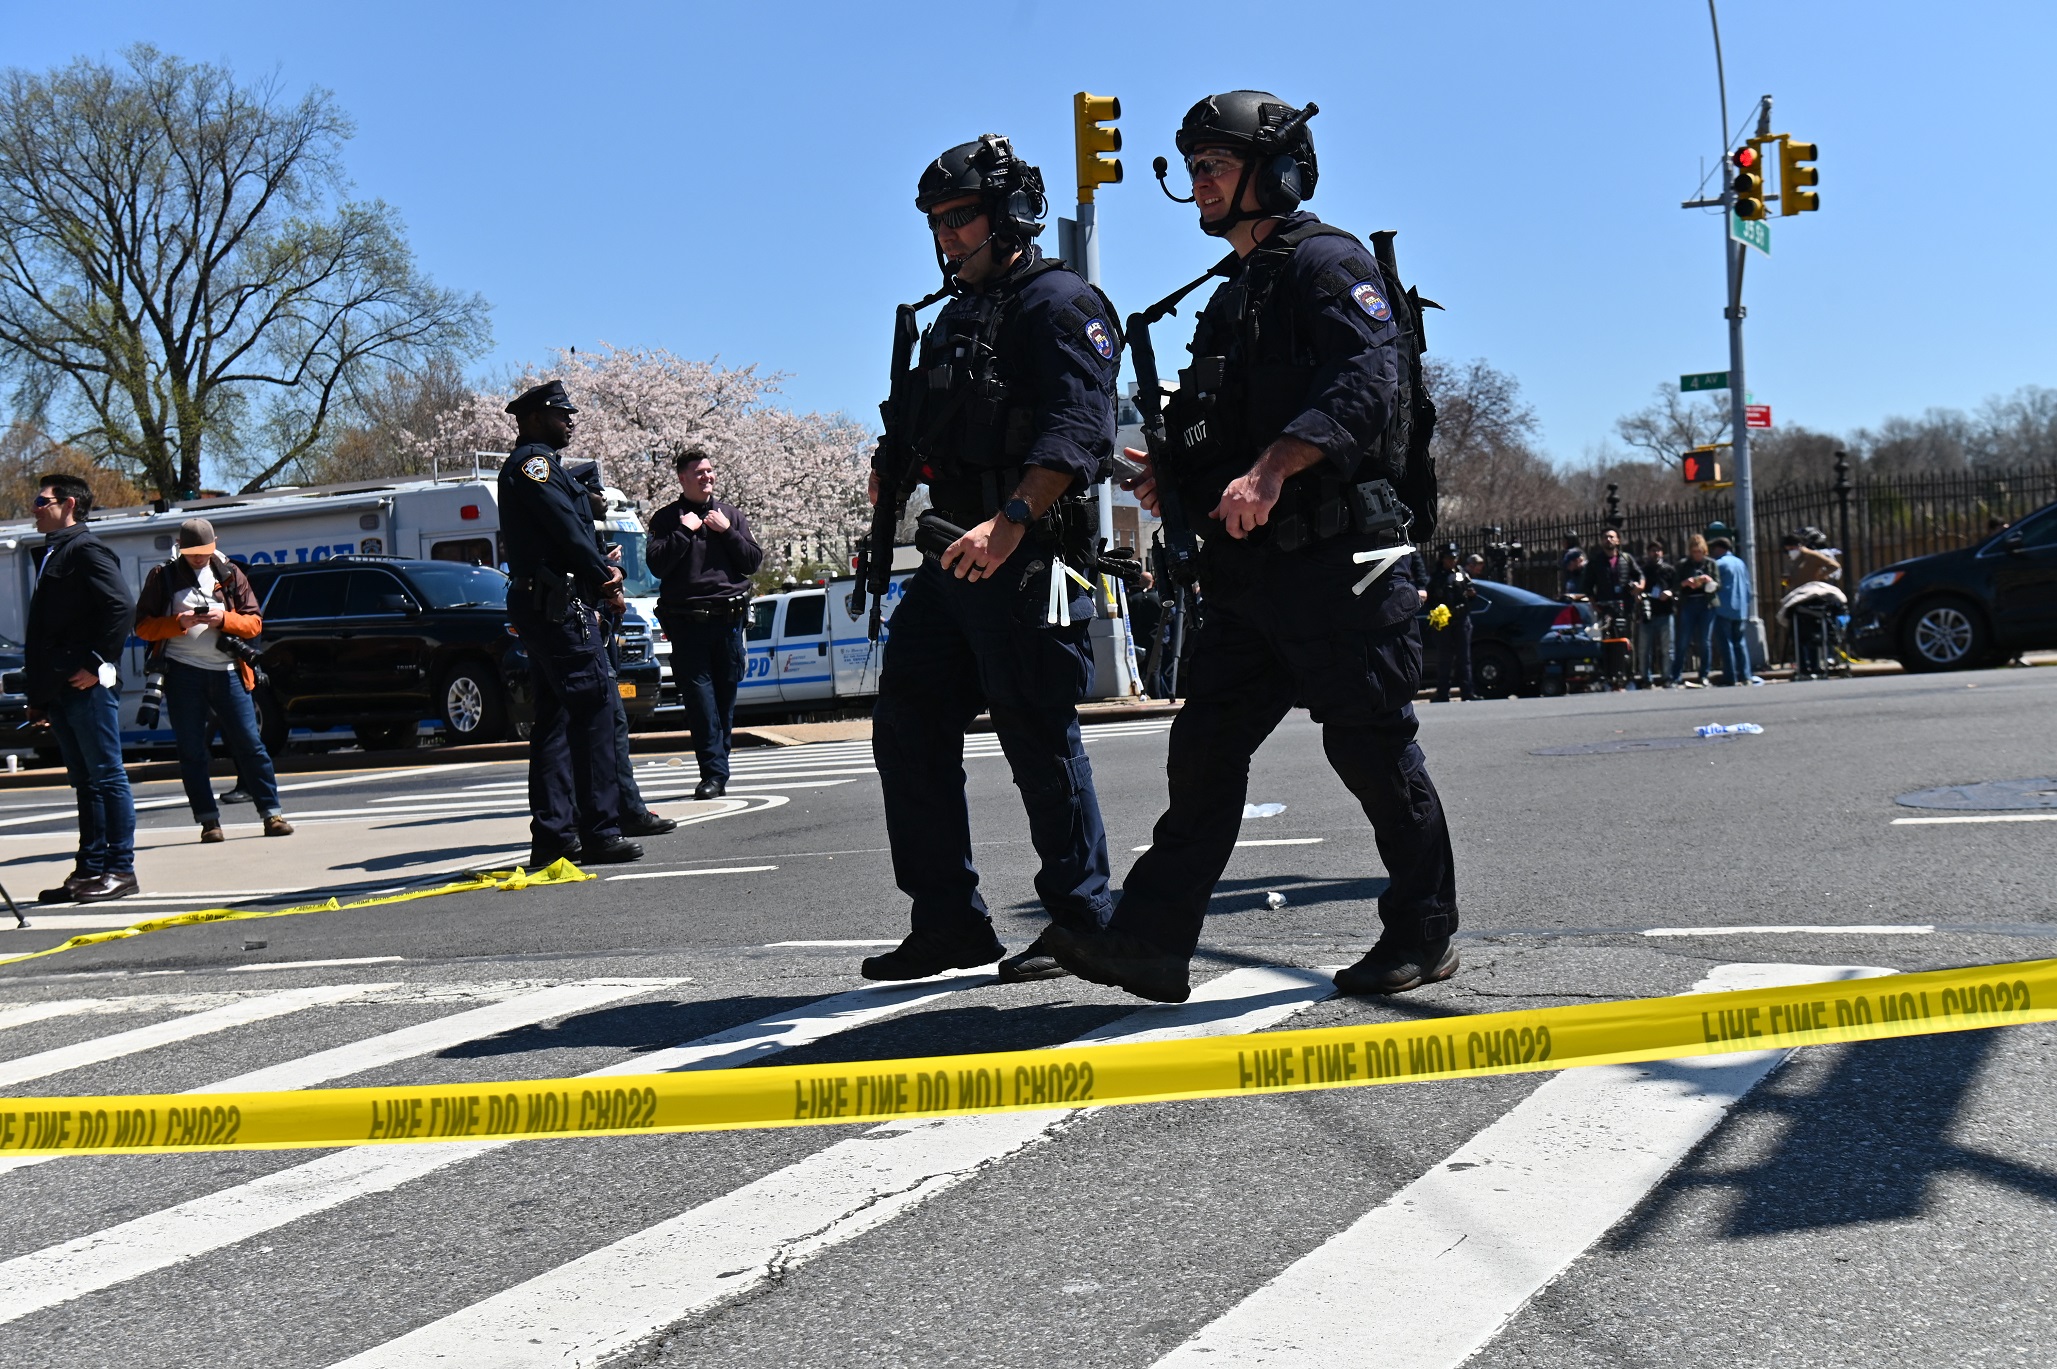 Senki sem halt meg a brooklyni lövöldözésben